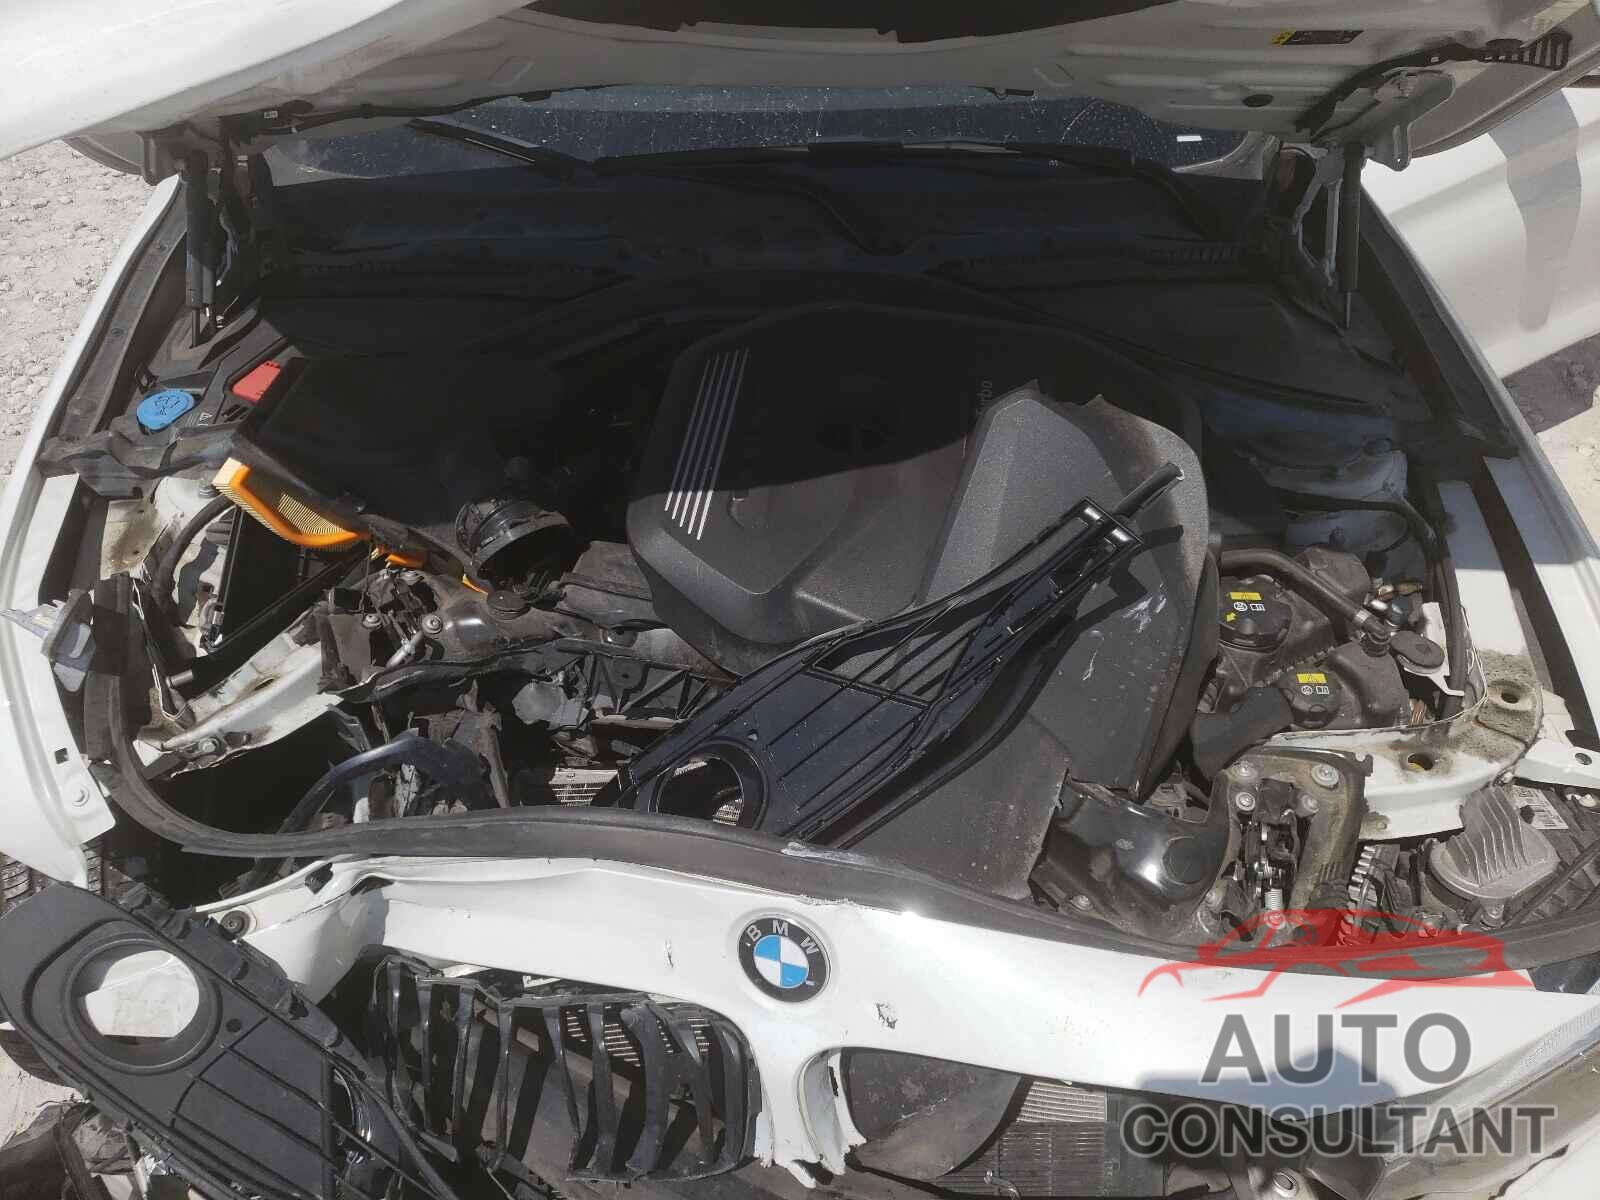 BMW 4 SERIES 2019 - WBA4J1C51KBM17935